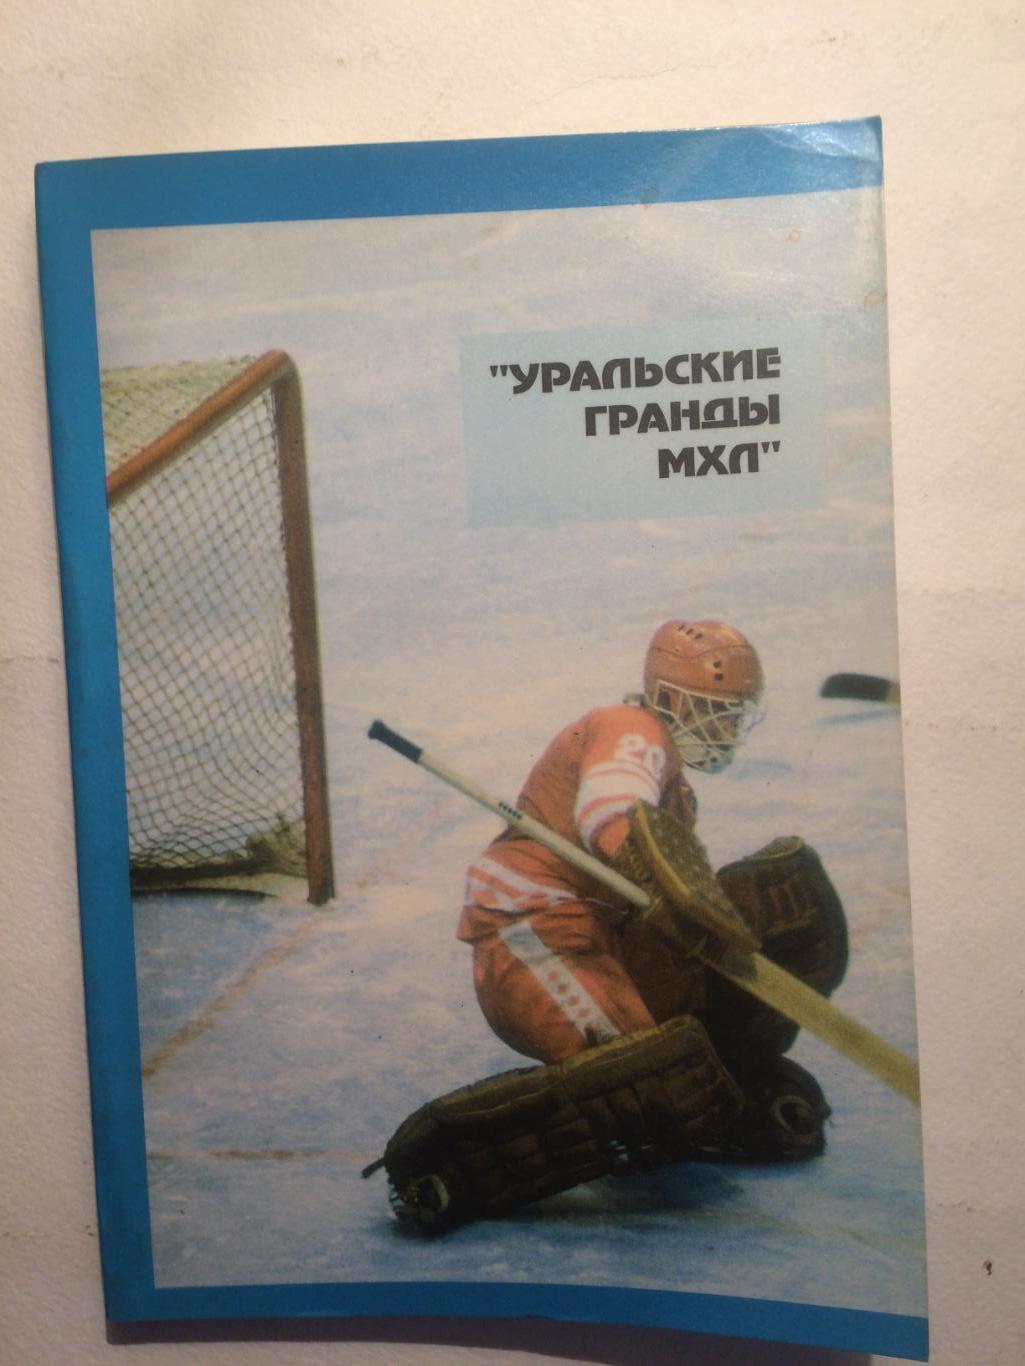 Хоккей Уральские гранды справочник 1994-1995